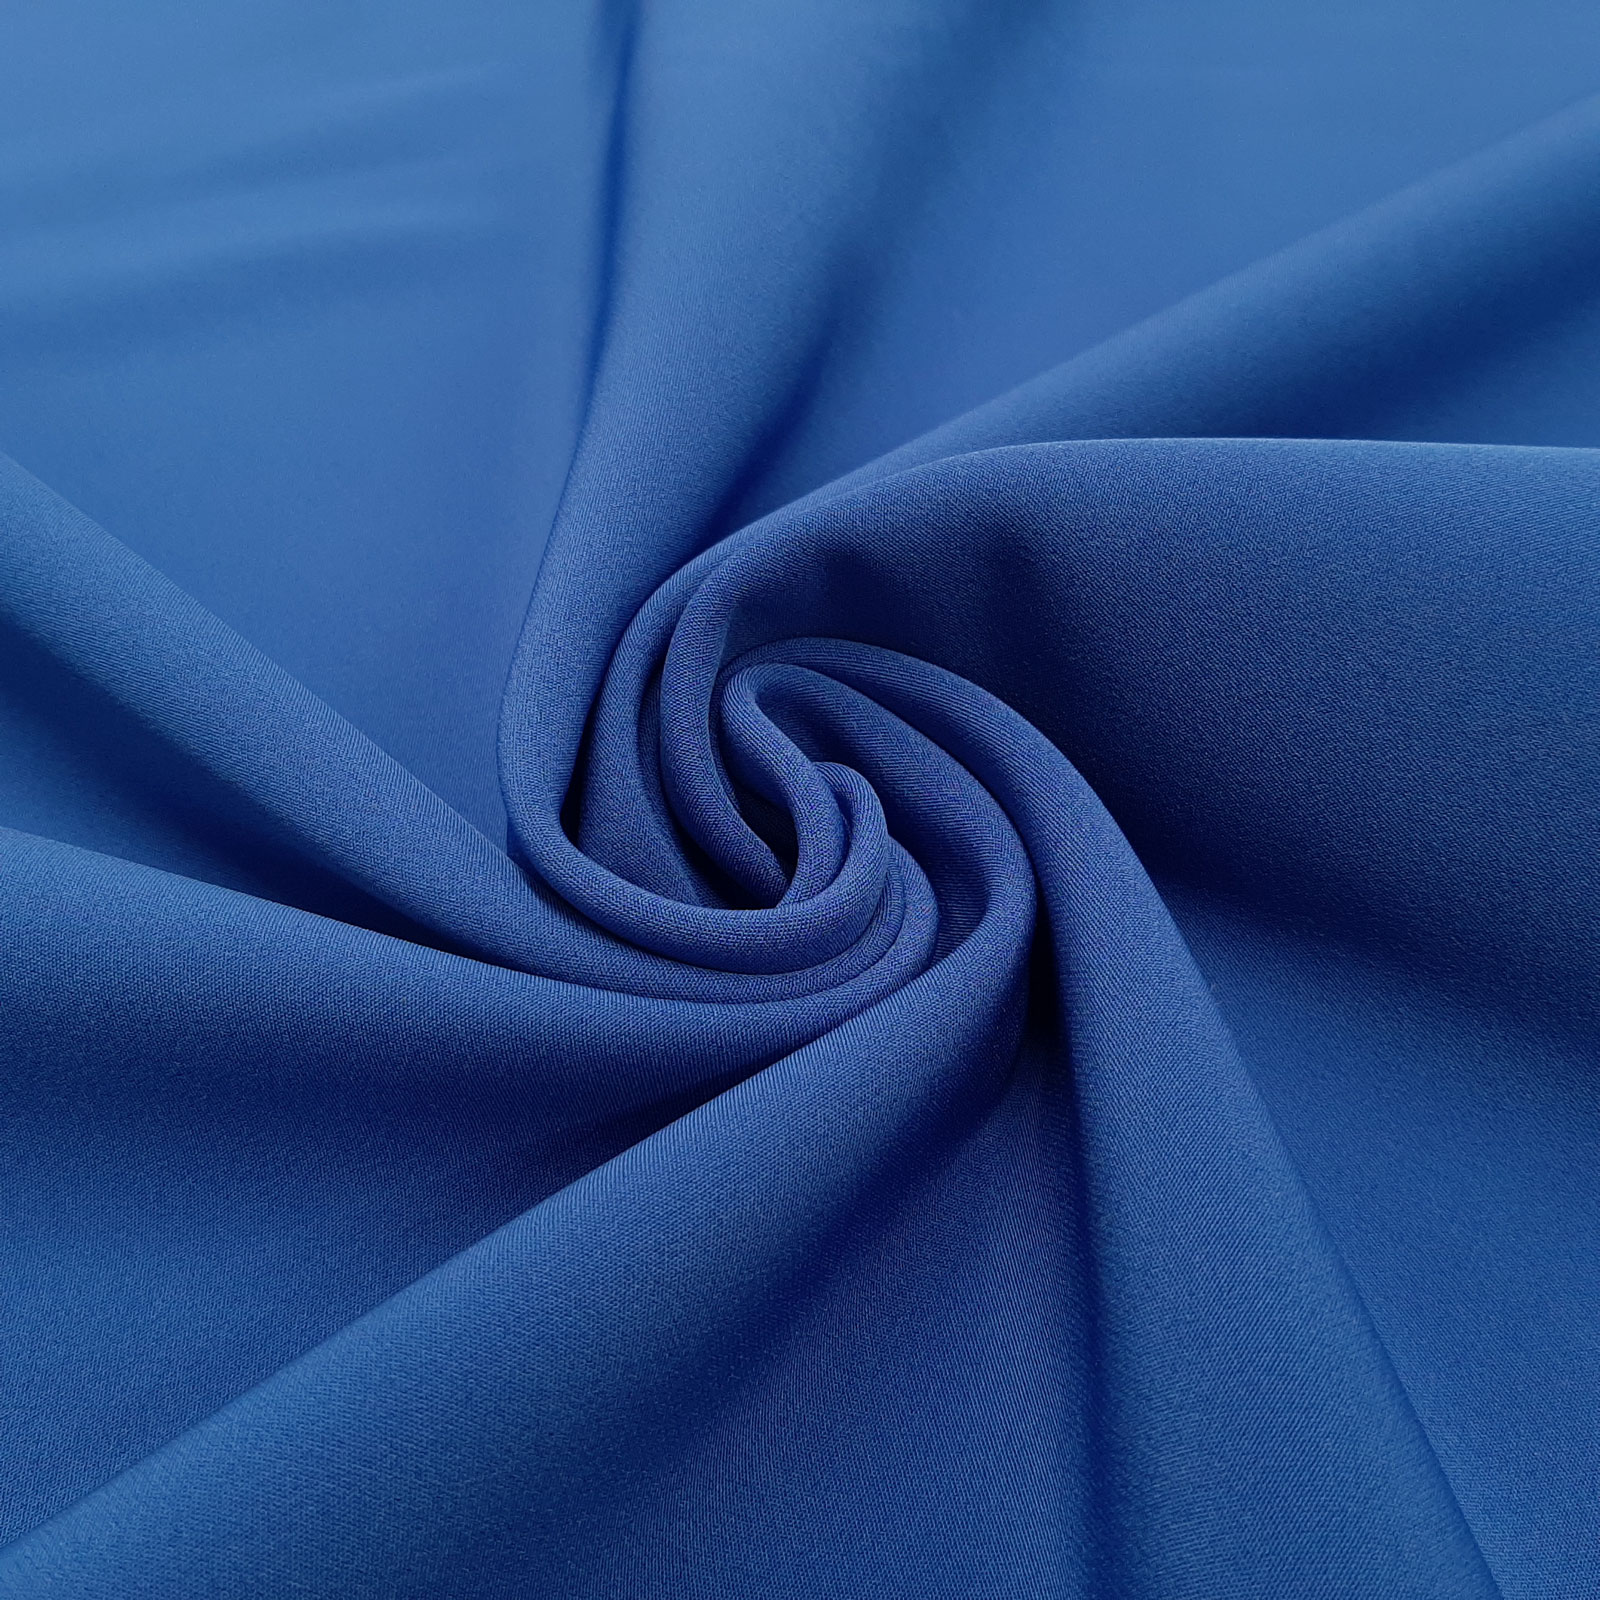 Medea - Softshell 4-Way-Stretch - Blu reale